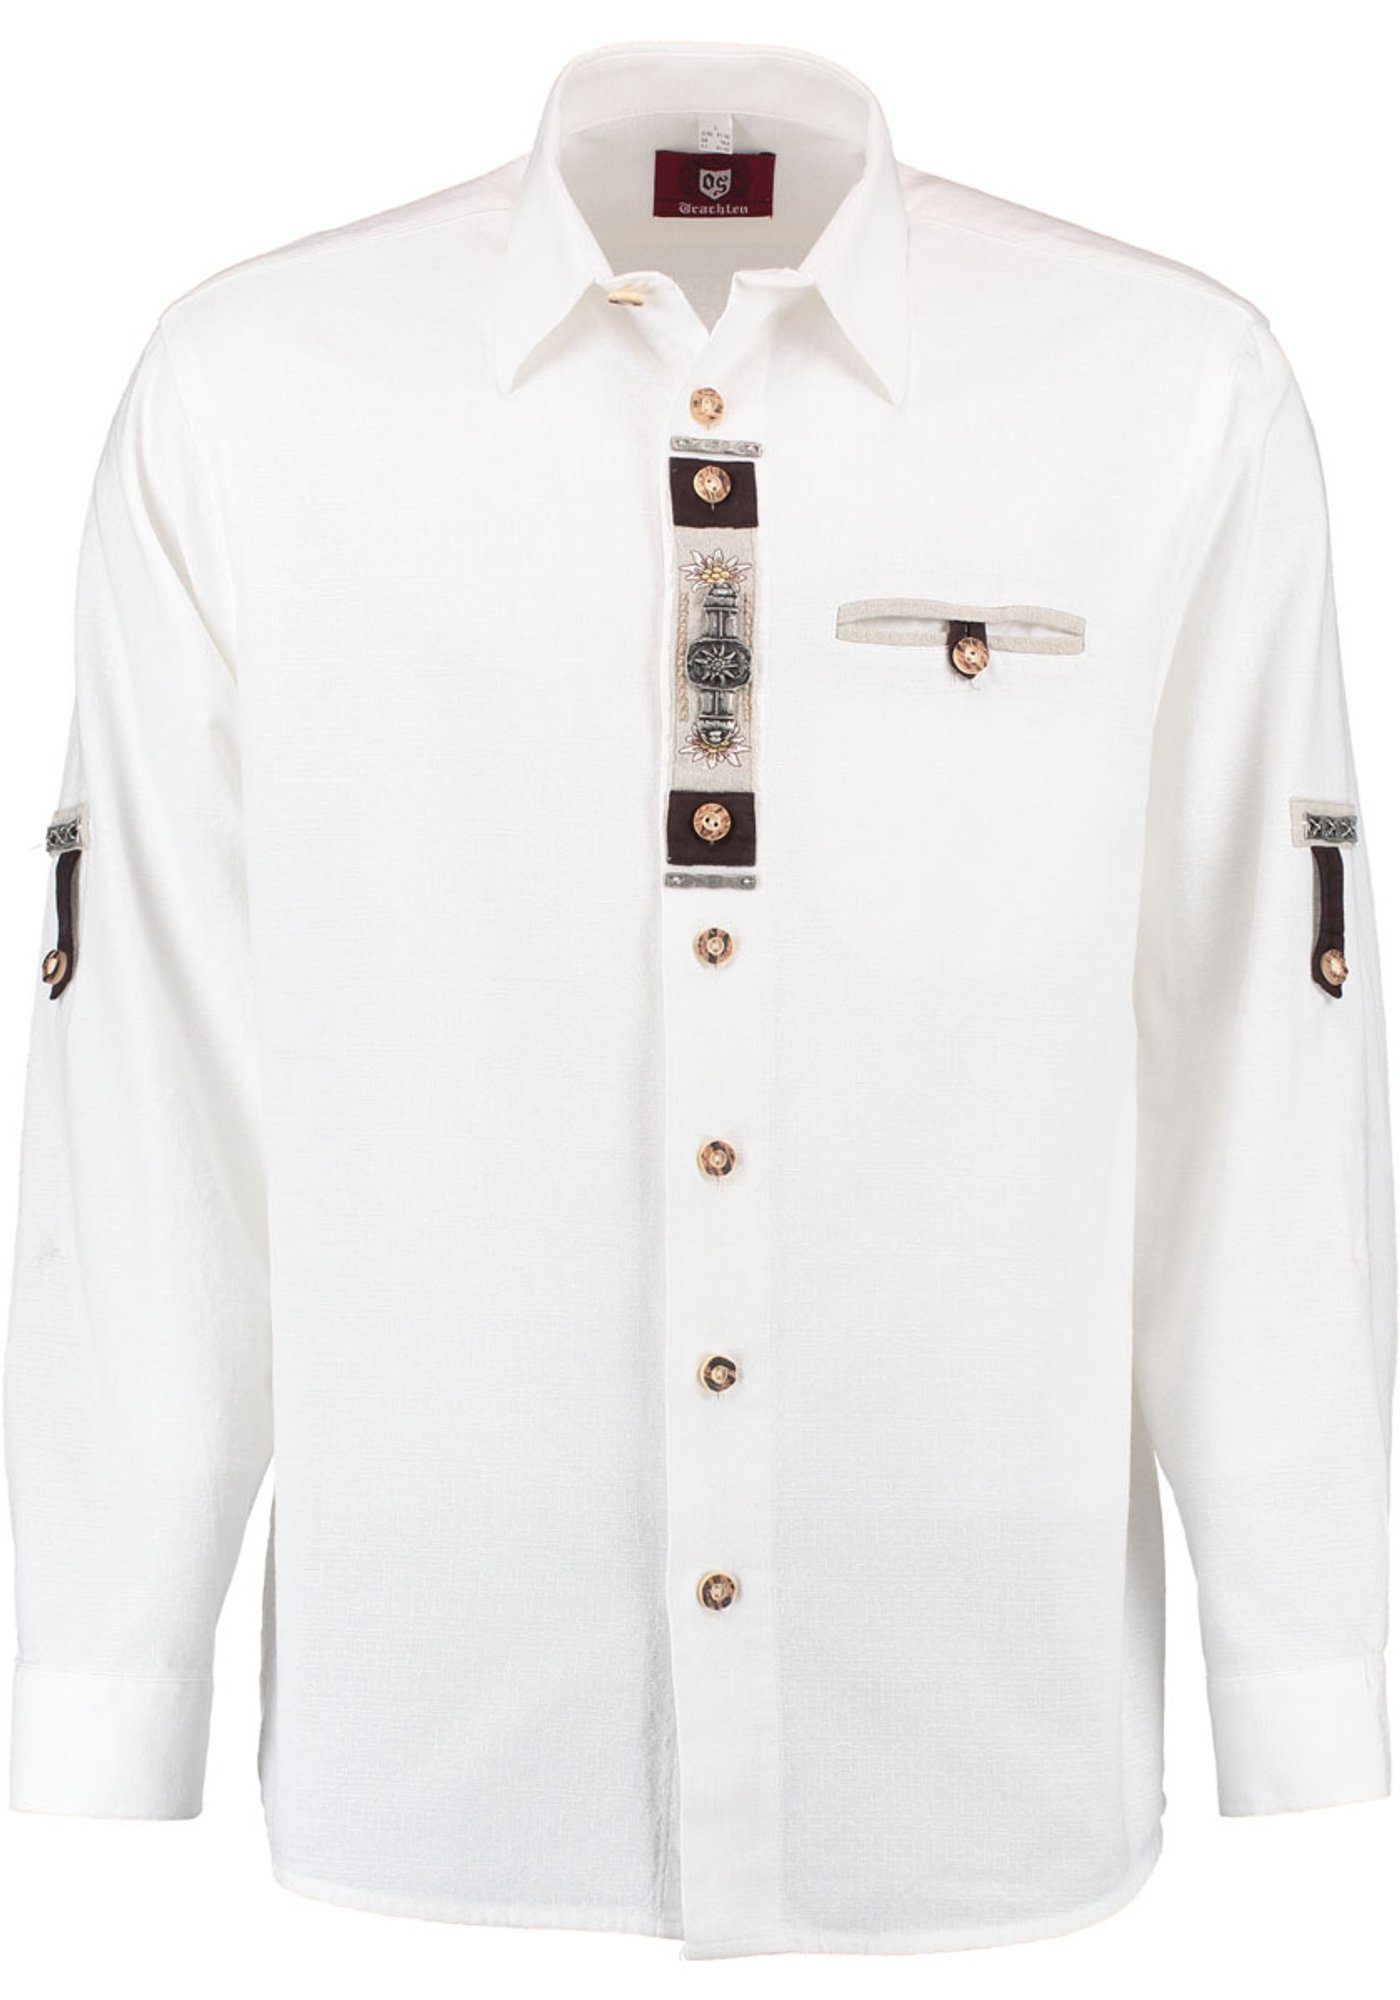 OS-Trachten der auf Trachtenhemd mit Knopfleiste Edelweiß-Zierteile Glexor Langarmhemd